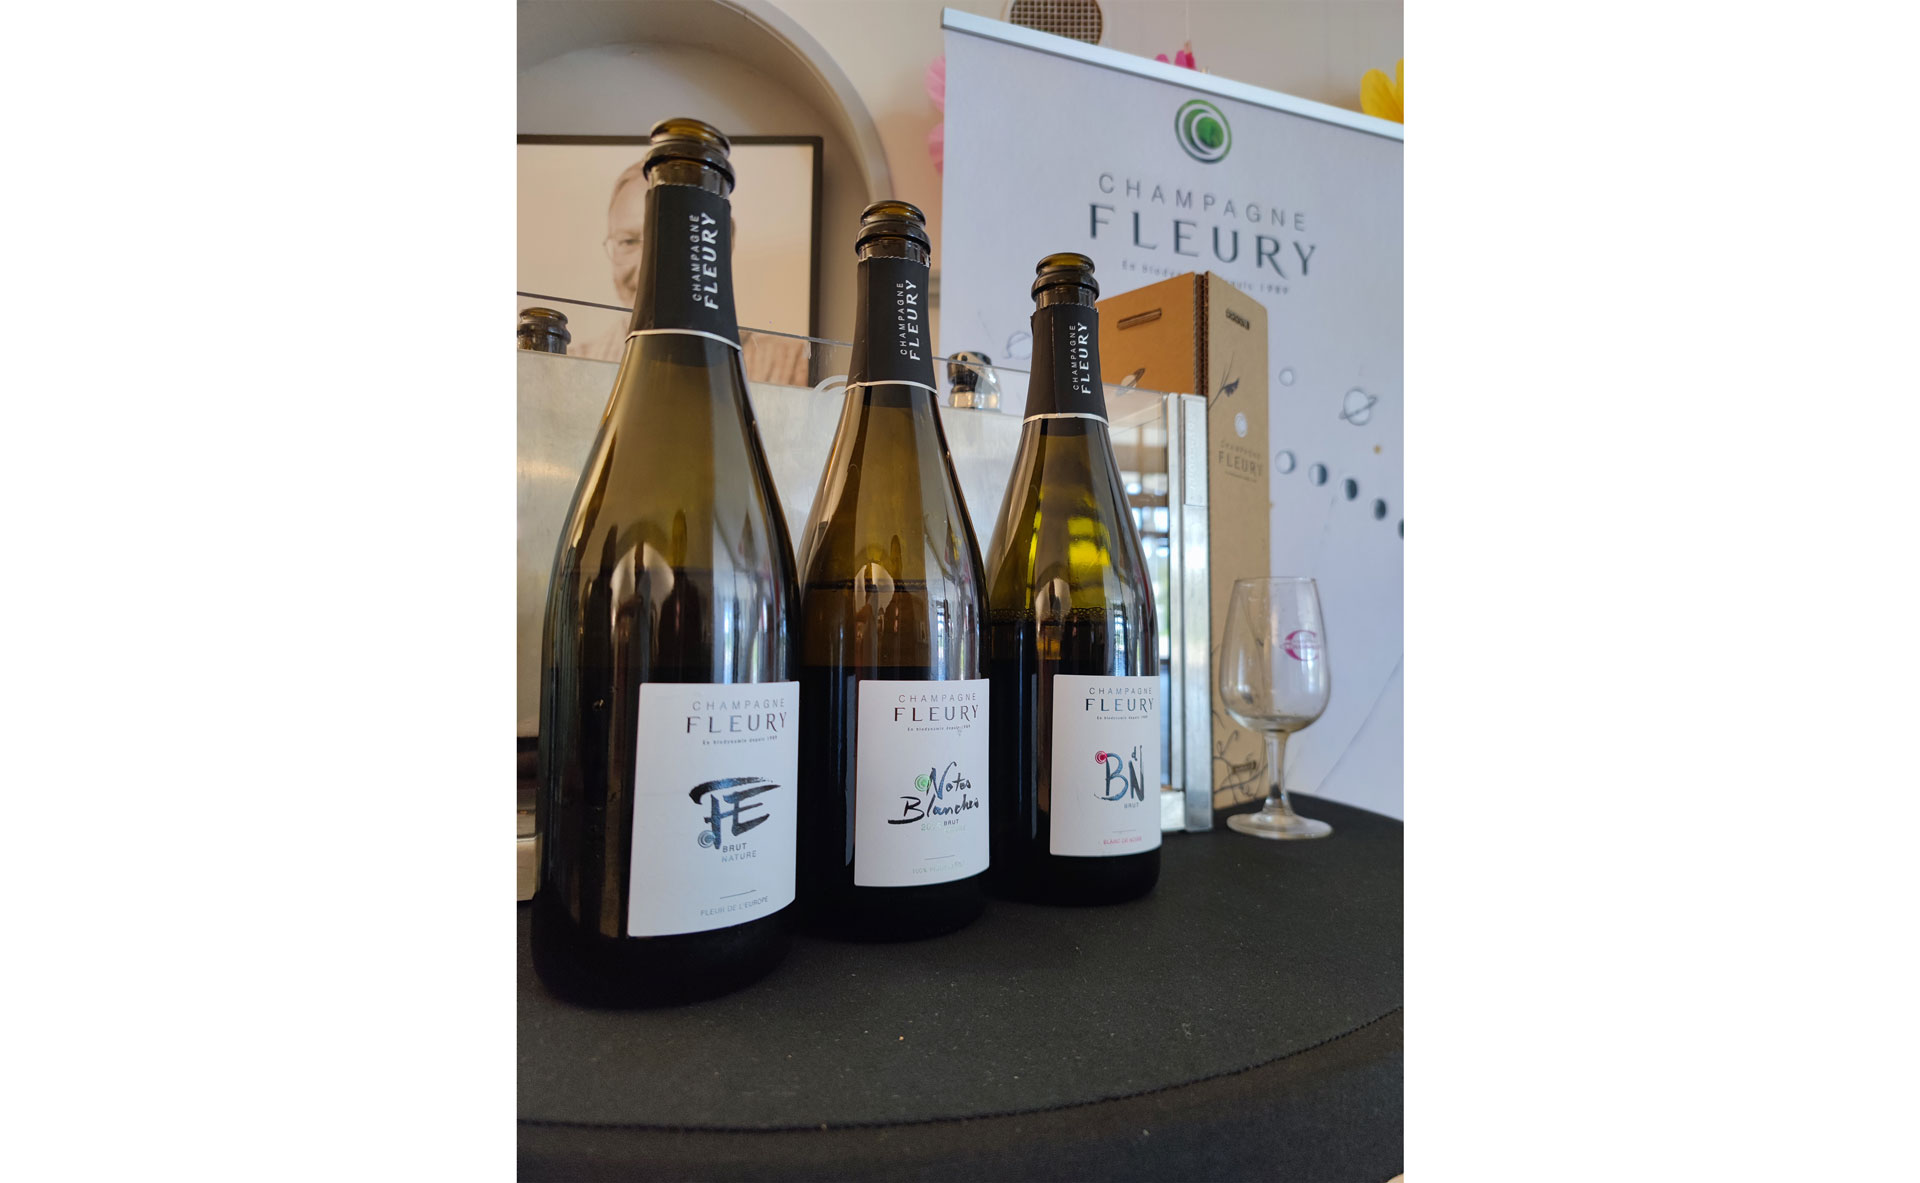 La gamme de la Maison Fleury, précurseur de la biodynamie en Champagne - Crédits photos : Yoann Palej